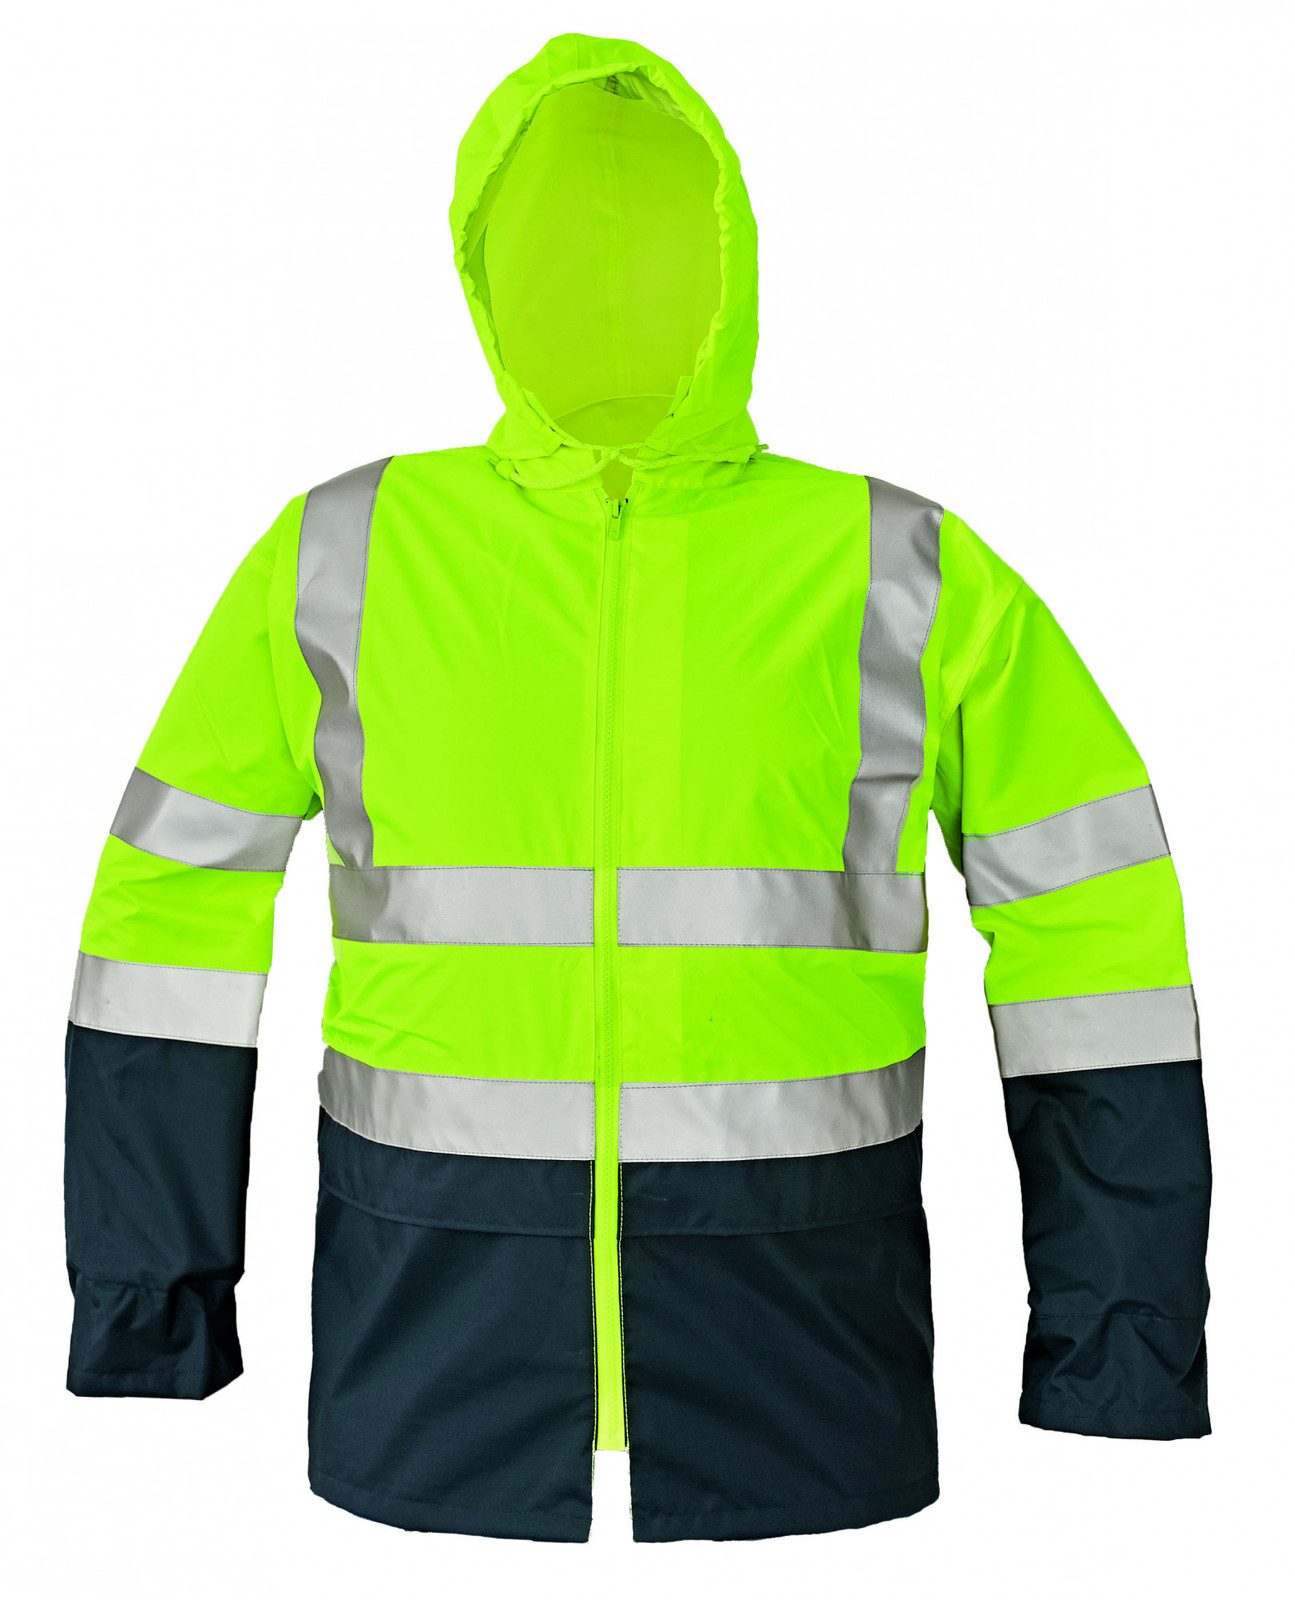 Reflexná pracovná bunda Epping - veľkosť: S, farba: žltá/navy